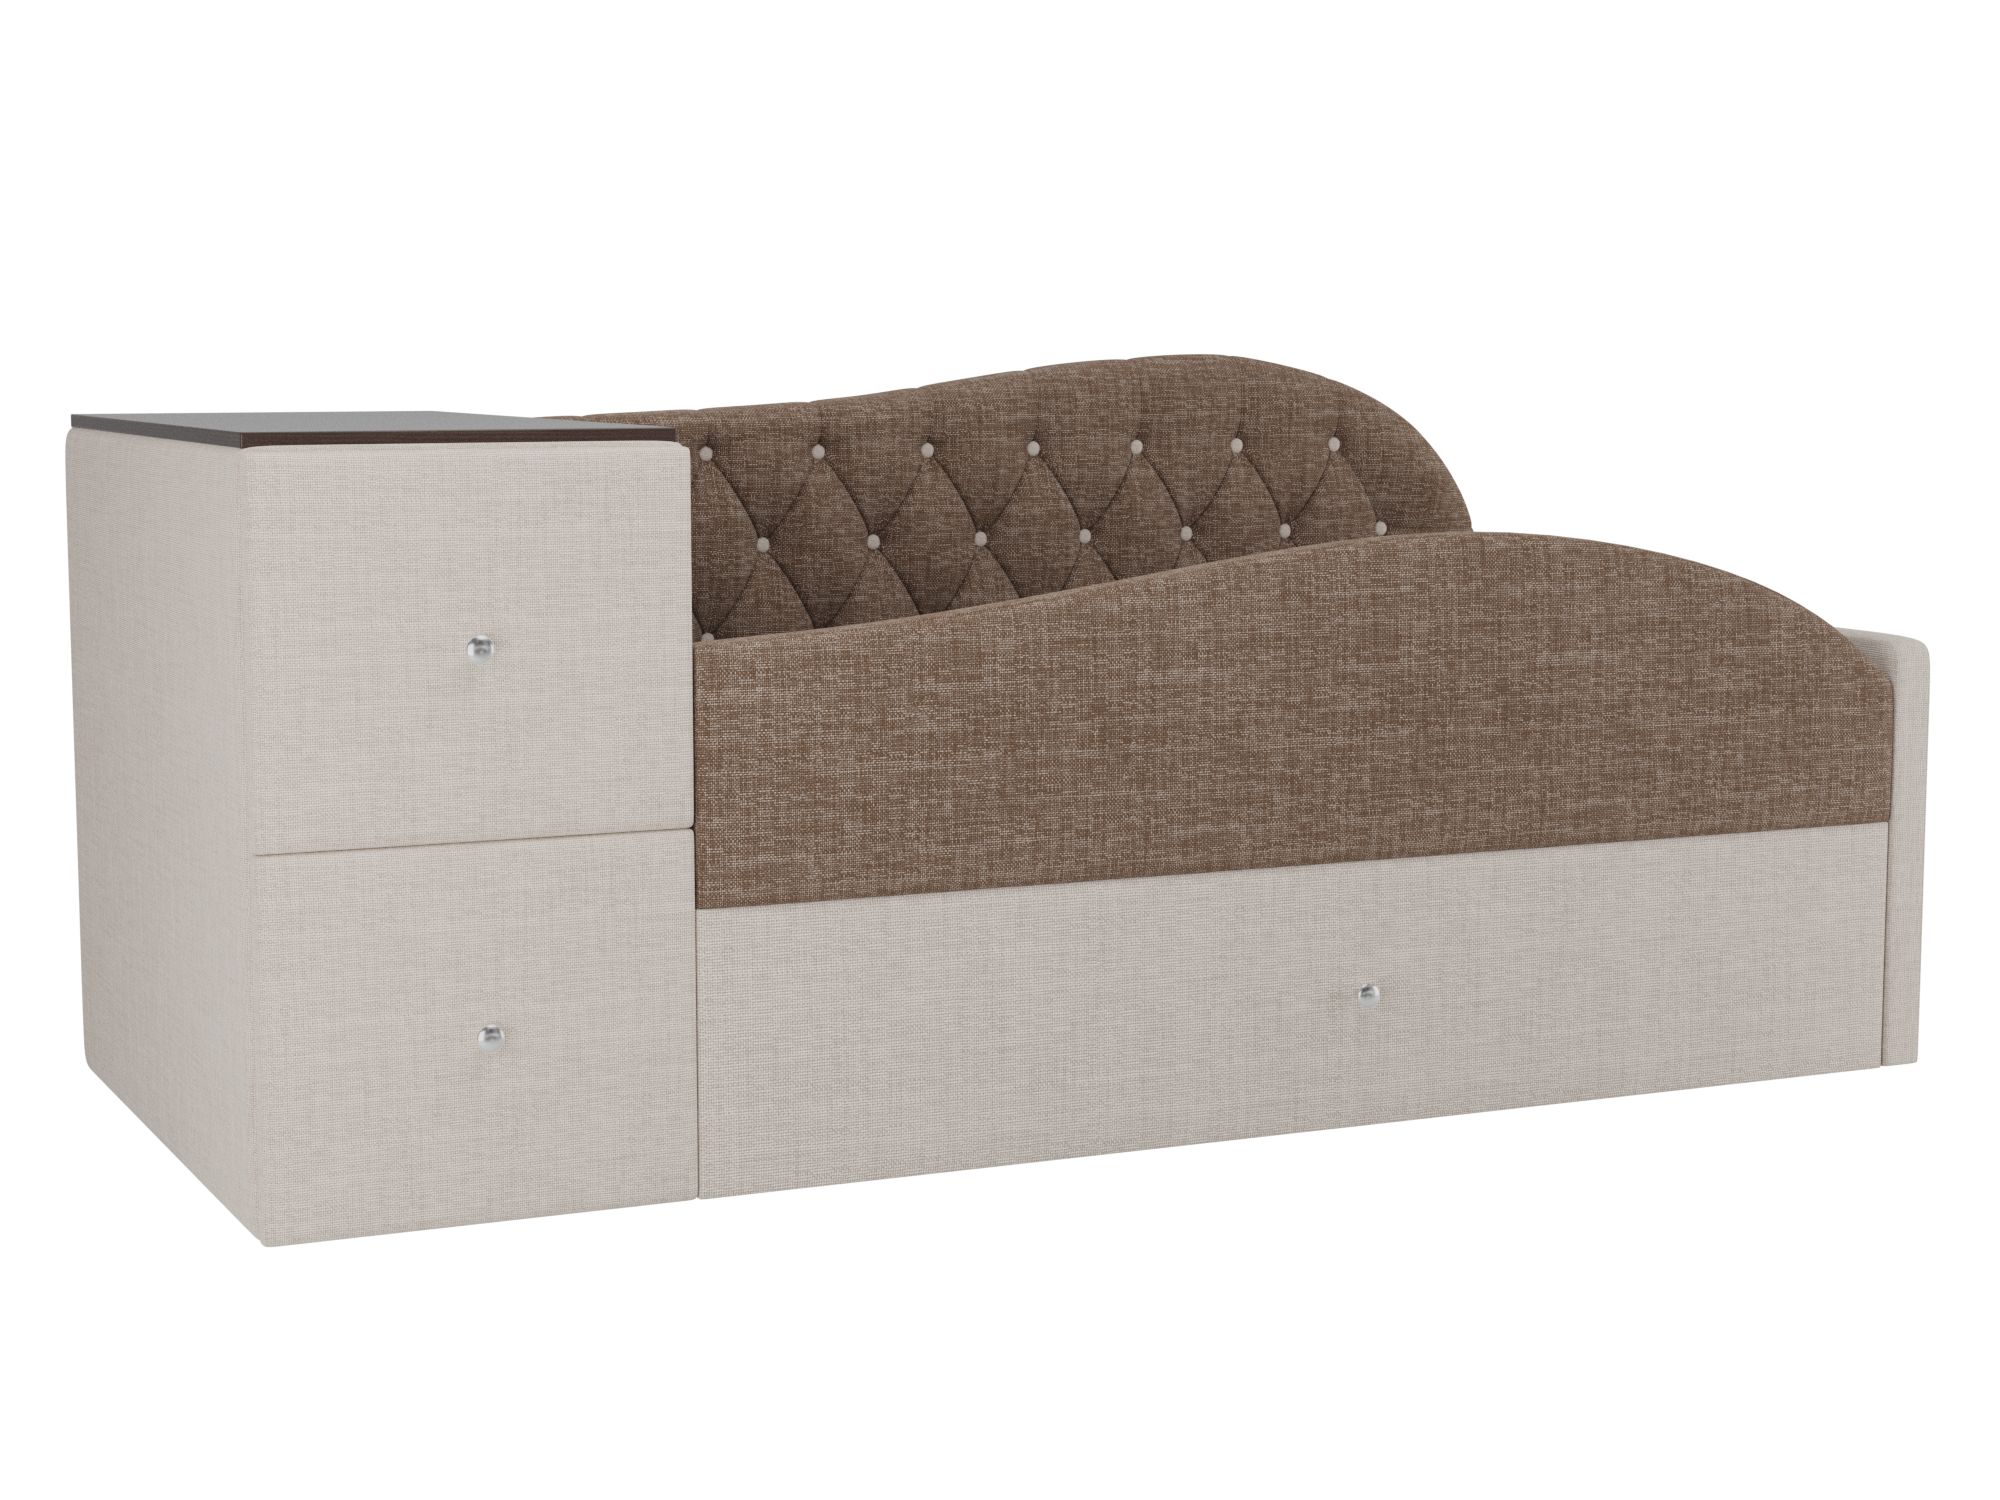 Детская кровать Джуниор Правый угол Коричневый, Бежевый, ЛДСП детская кровать мебелико делюкс рогожка коричневый